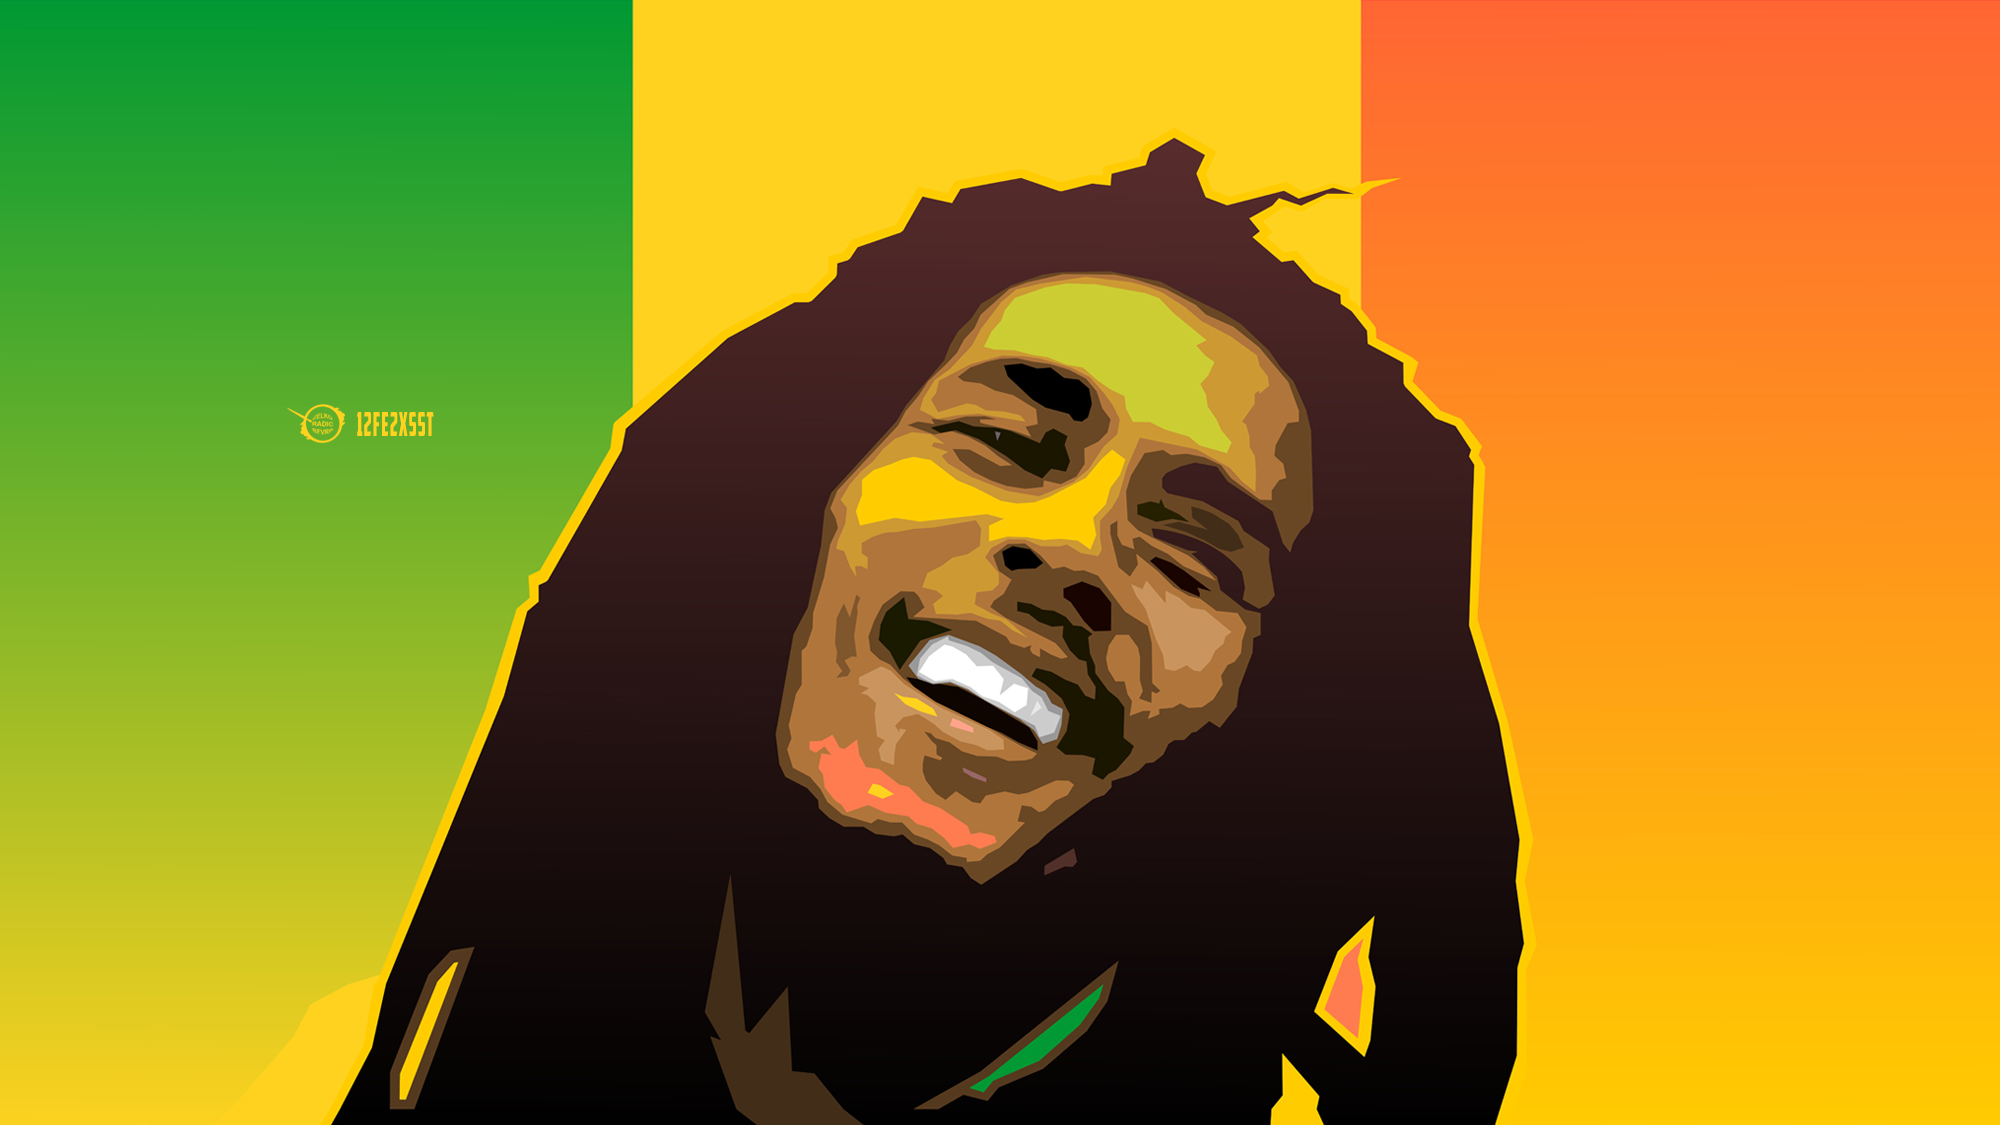 Bob Marley Celebrity Musician Portrait Reggae 2000x1125